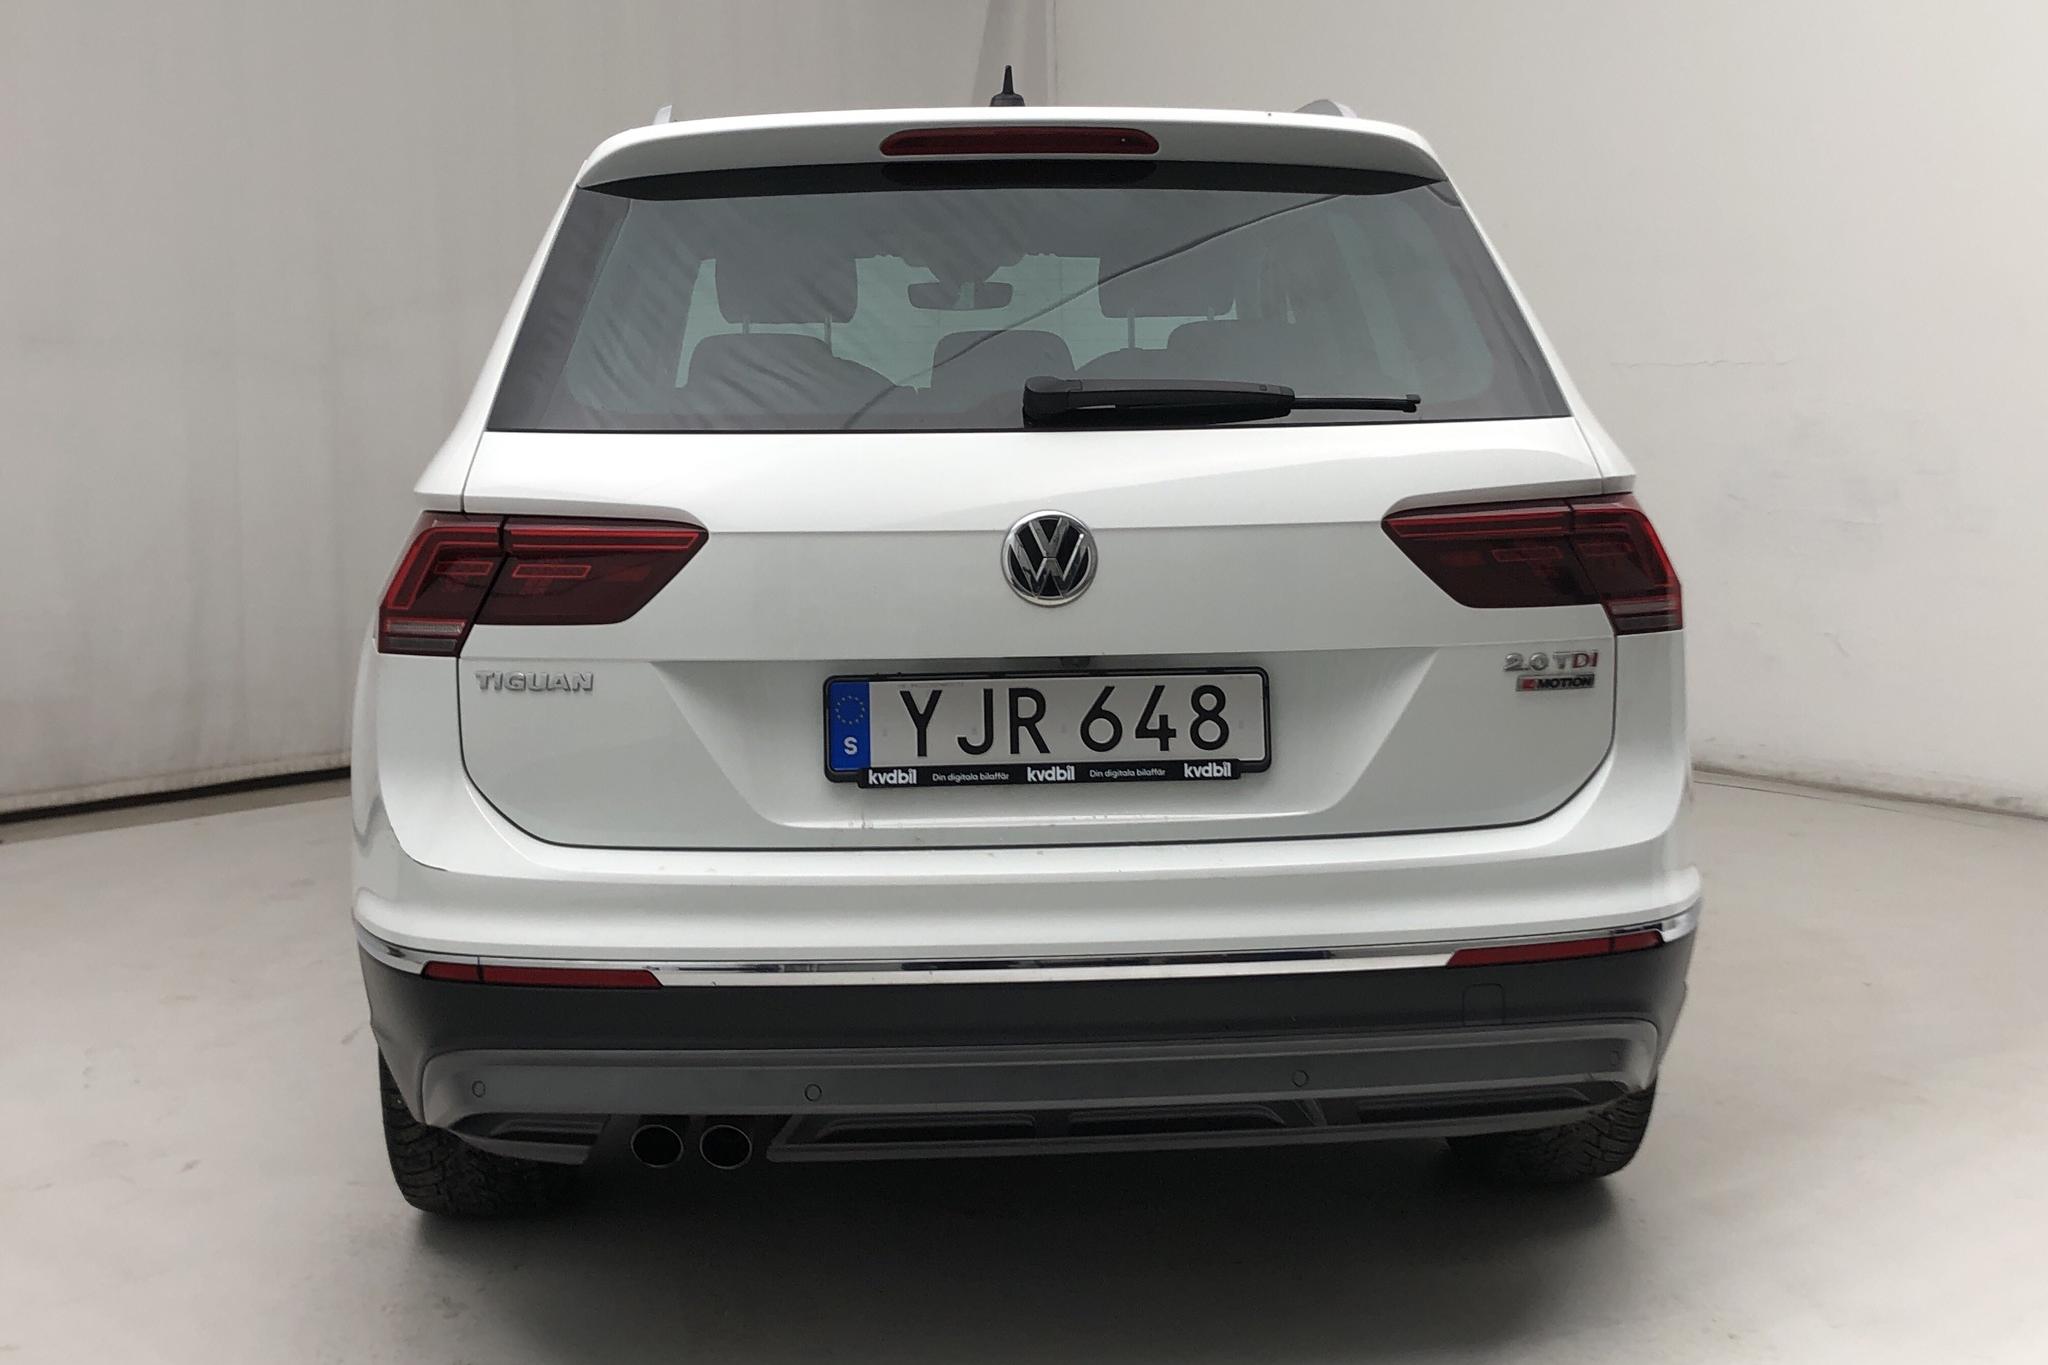 VW Tiguan 2.0 TDI 4MOTION (190hk) - 59 600 km - Automatic - white - 2017